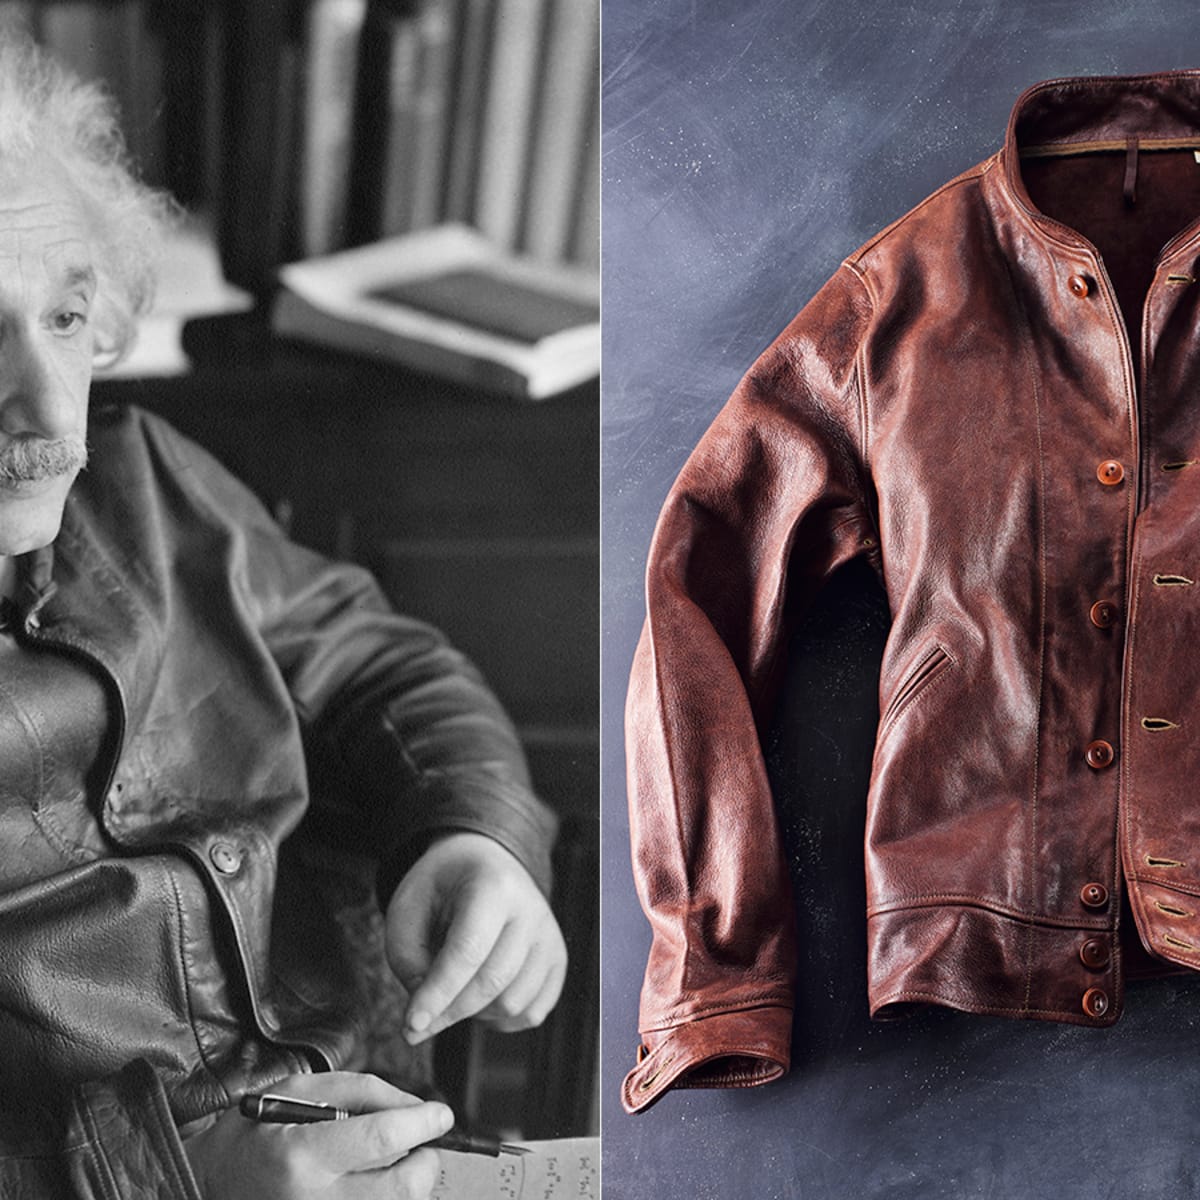 Levi's Vintage Clothing Reissues Albert Einstein's Favorite